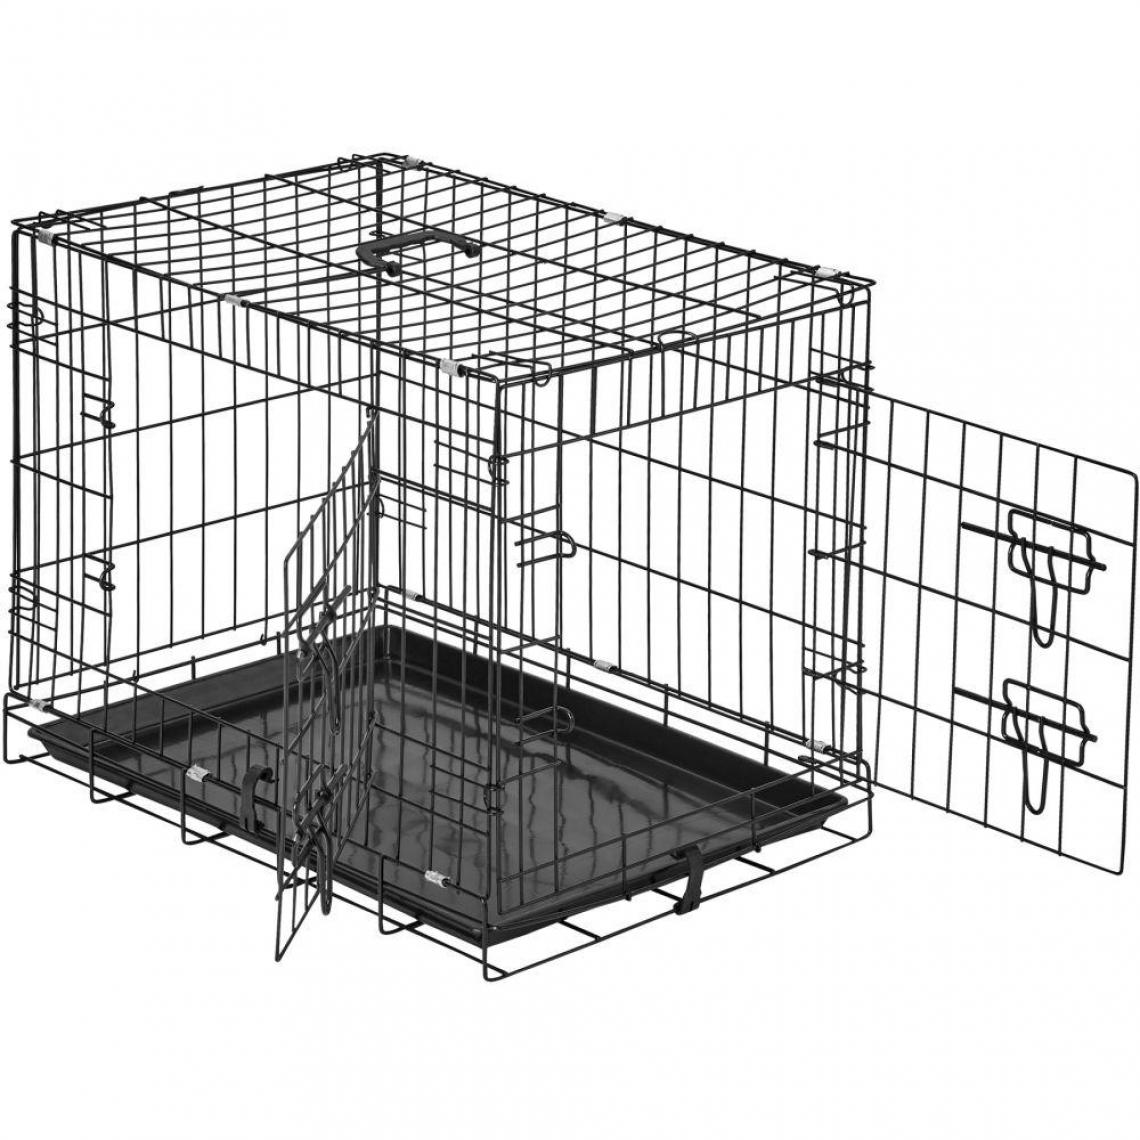 Helloshop26 - Cage de transport chien acier 60 x 44 x 51 cm 3708141 - Equipement de transport pour chat